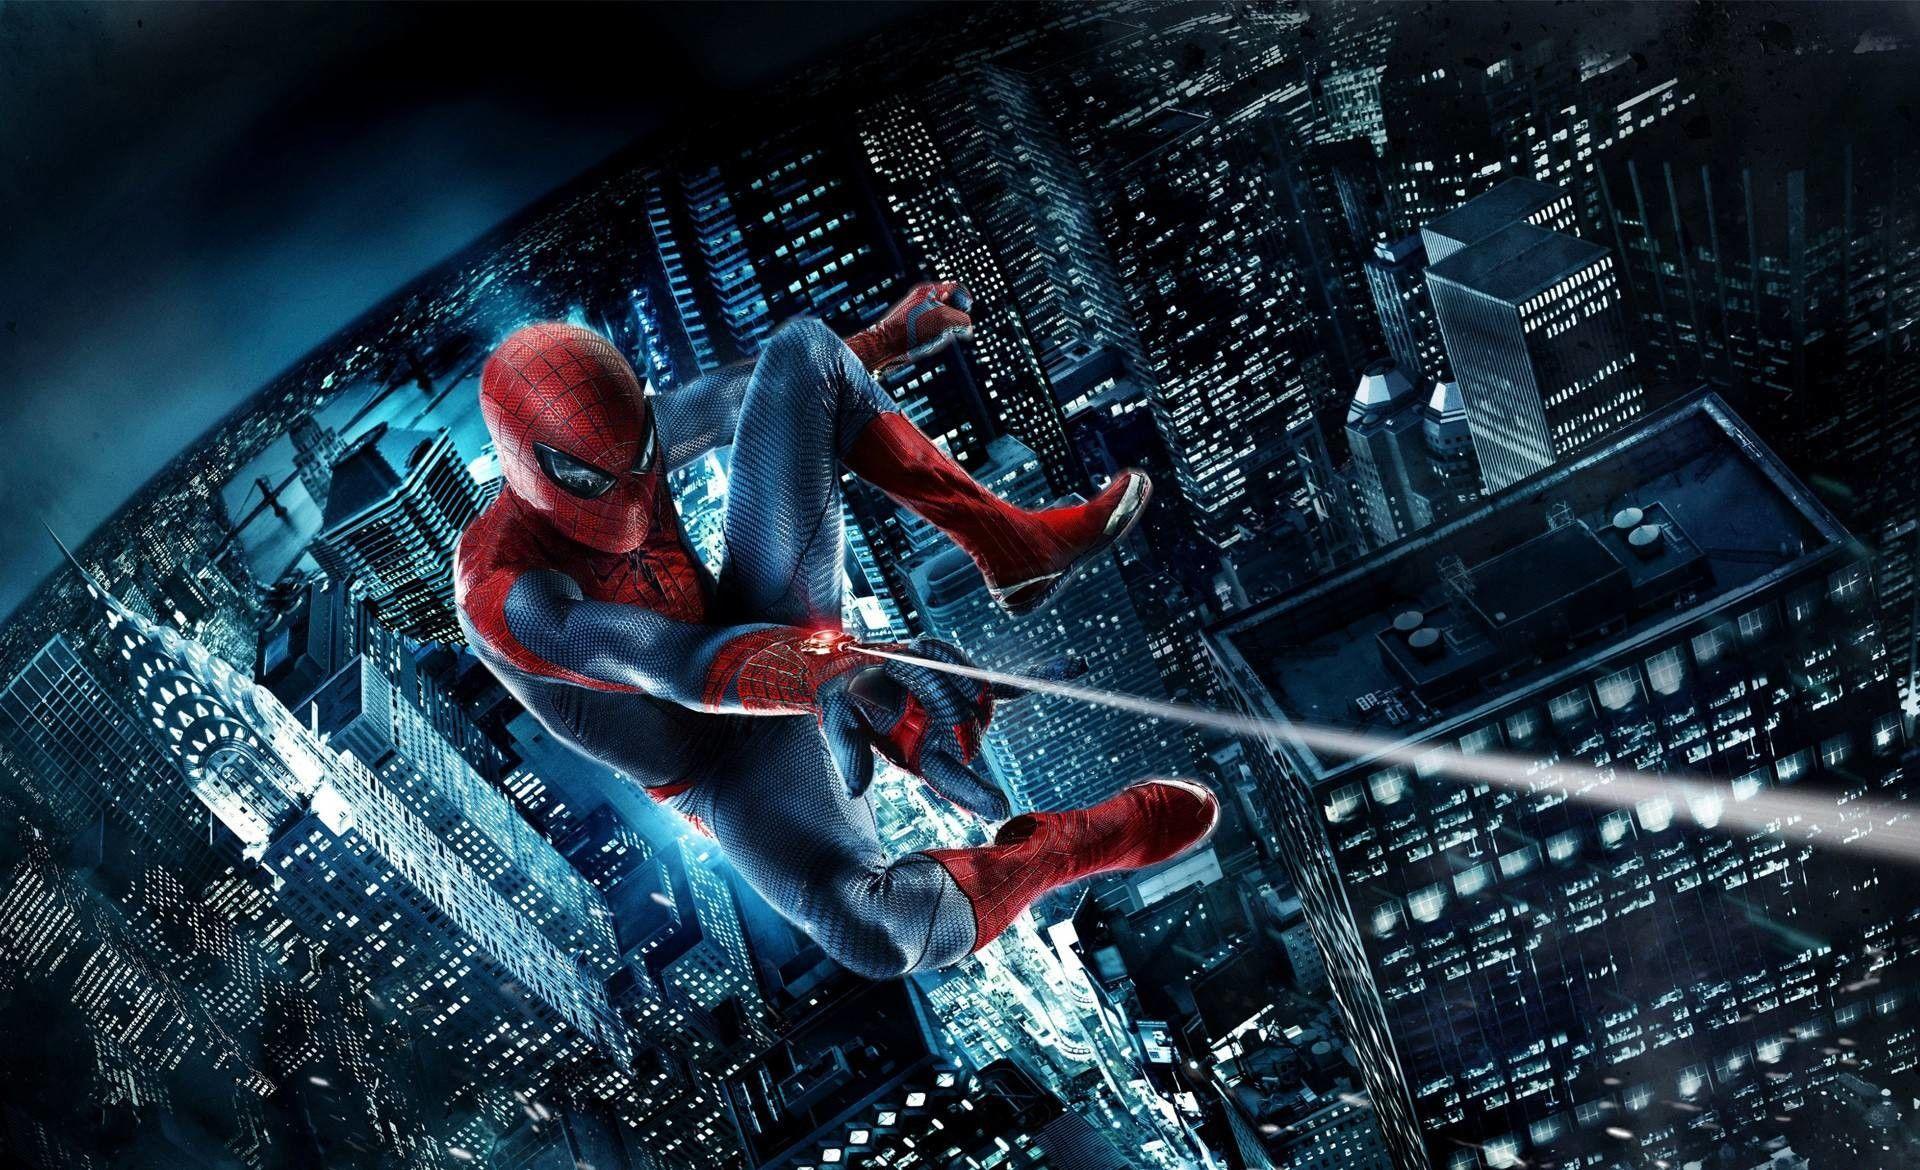 Điều gì tuyệt vời hơn khi bạn có một hình nền Spider Man siêu chất cho desktop của mình? Hãy ngắm một tác phẩm nghệ thuật đẹp mắt này và cảm nhận được sức mạnh của người rắn nhện trong hành trình bảo vệ thành phố!